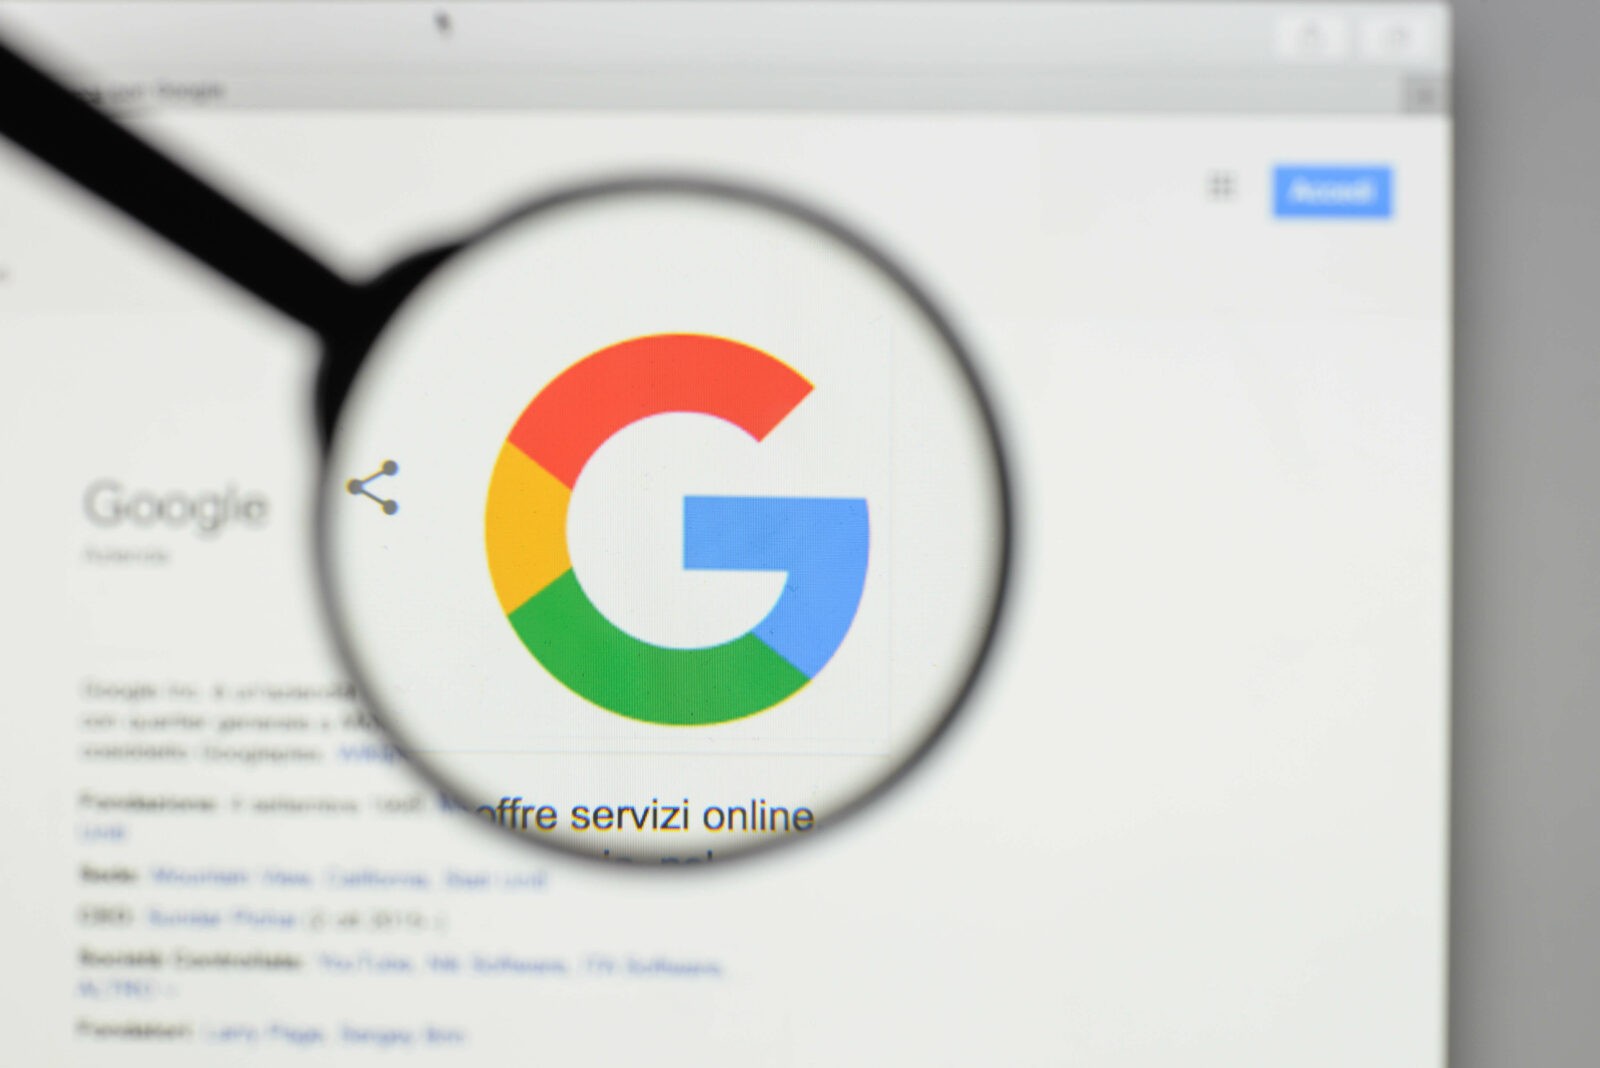 Google-Suche: Mit diesen 10 Tipps findest du alles! (Teil I)